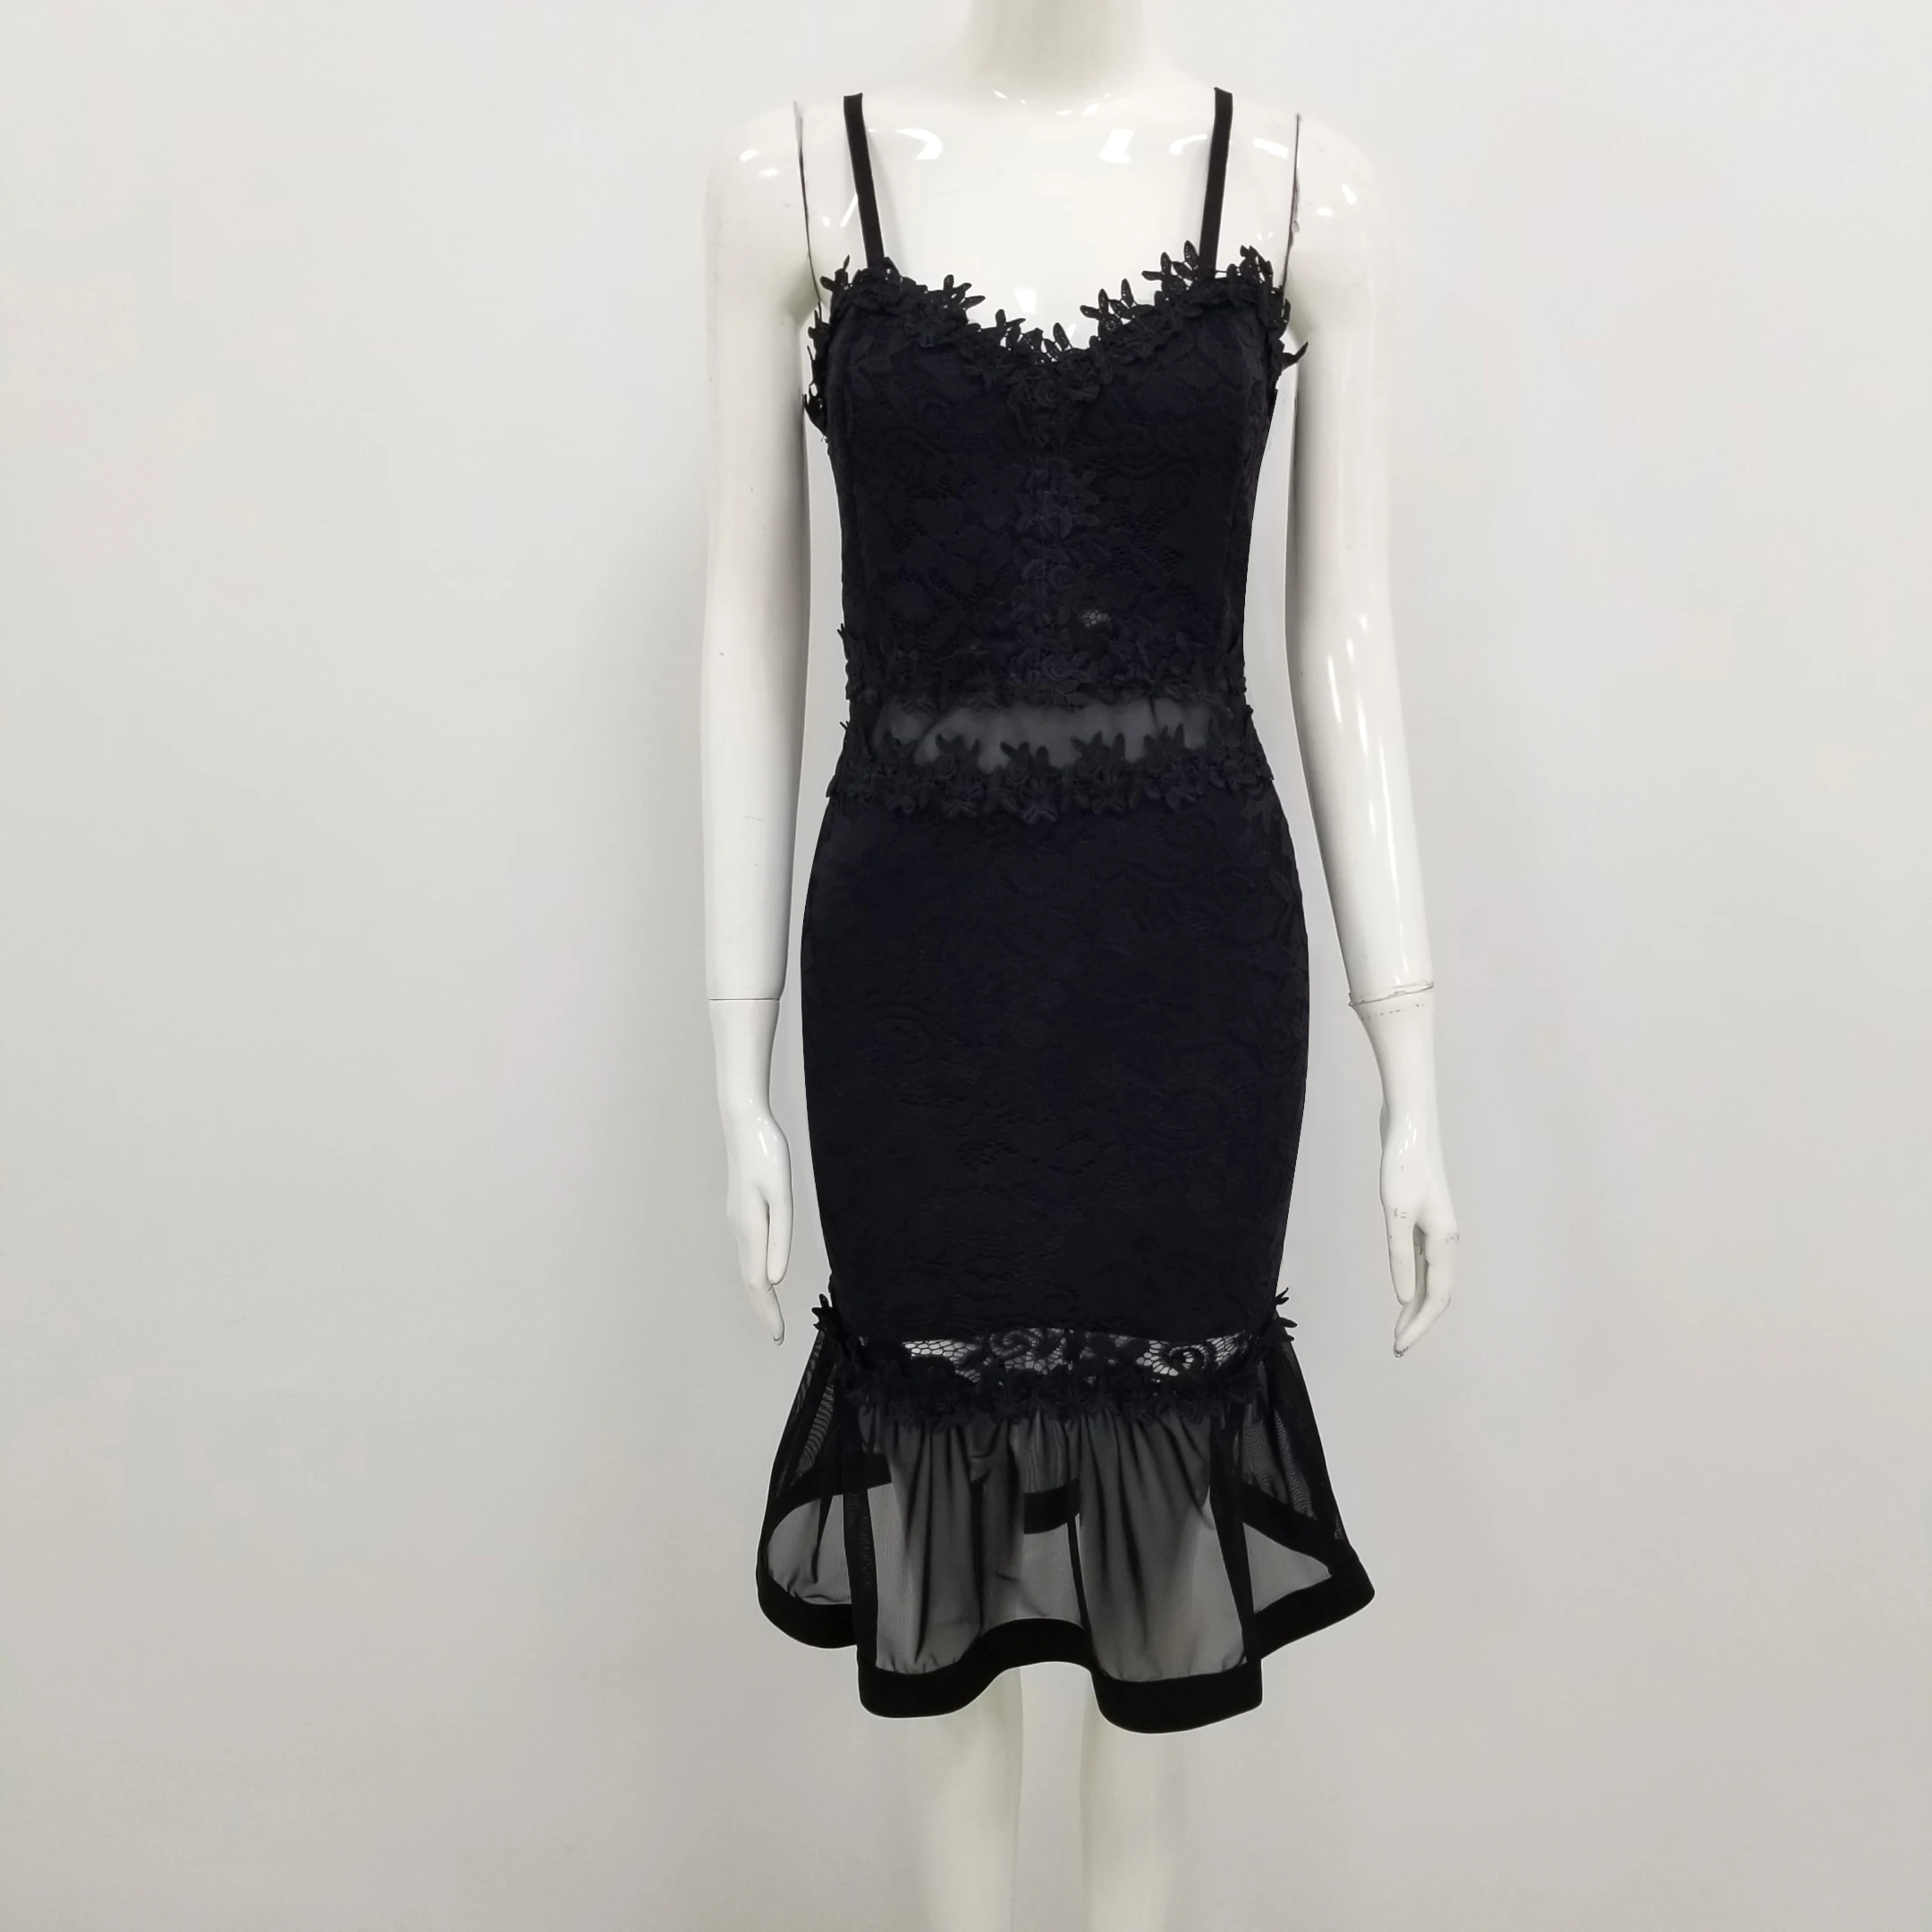 Новое поступление, Черное Кружевное Платье на бретельках, Открытое платье с рыбьим хвостом, элегантное облегающее платье миди, винтажное пл... от AliExpress RU&CIS NEW